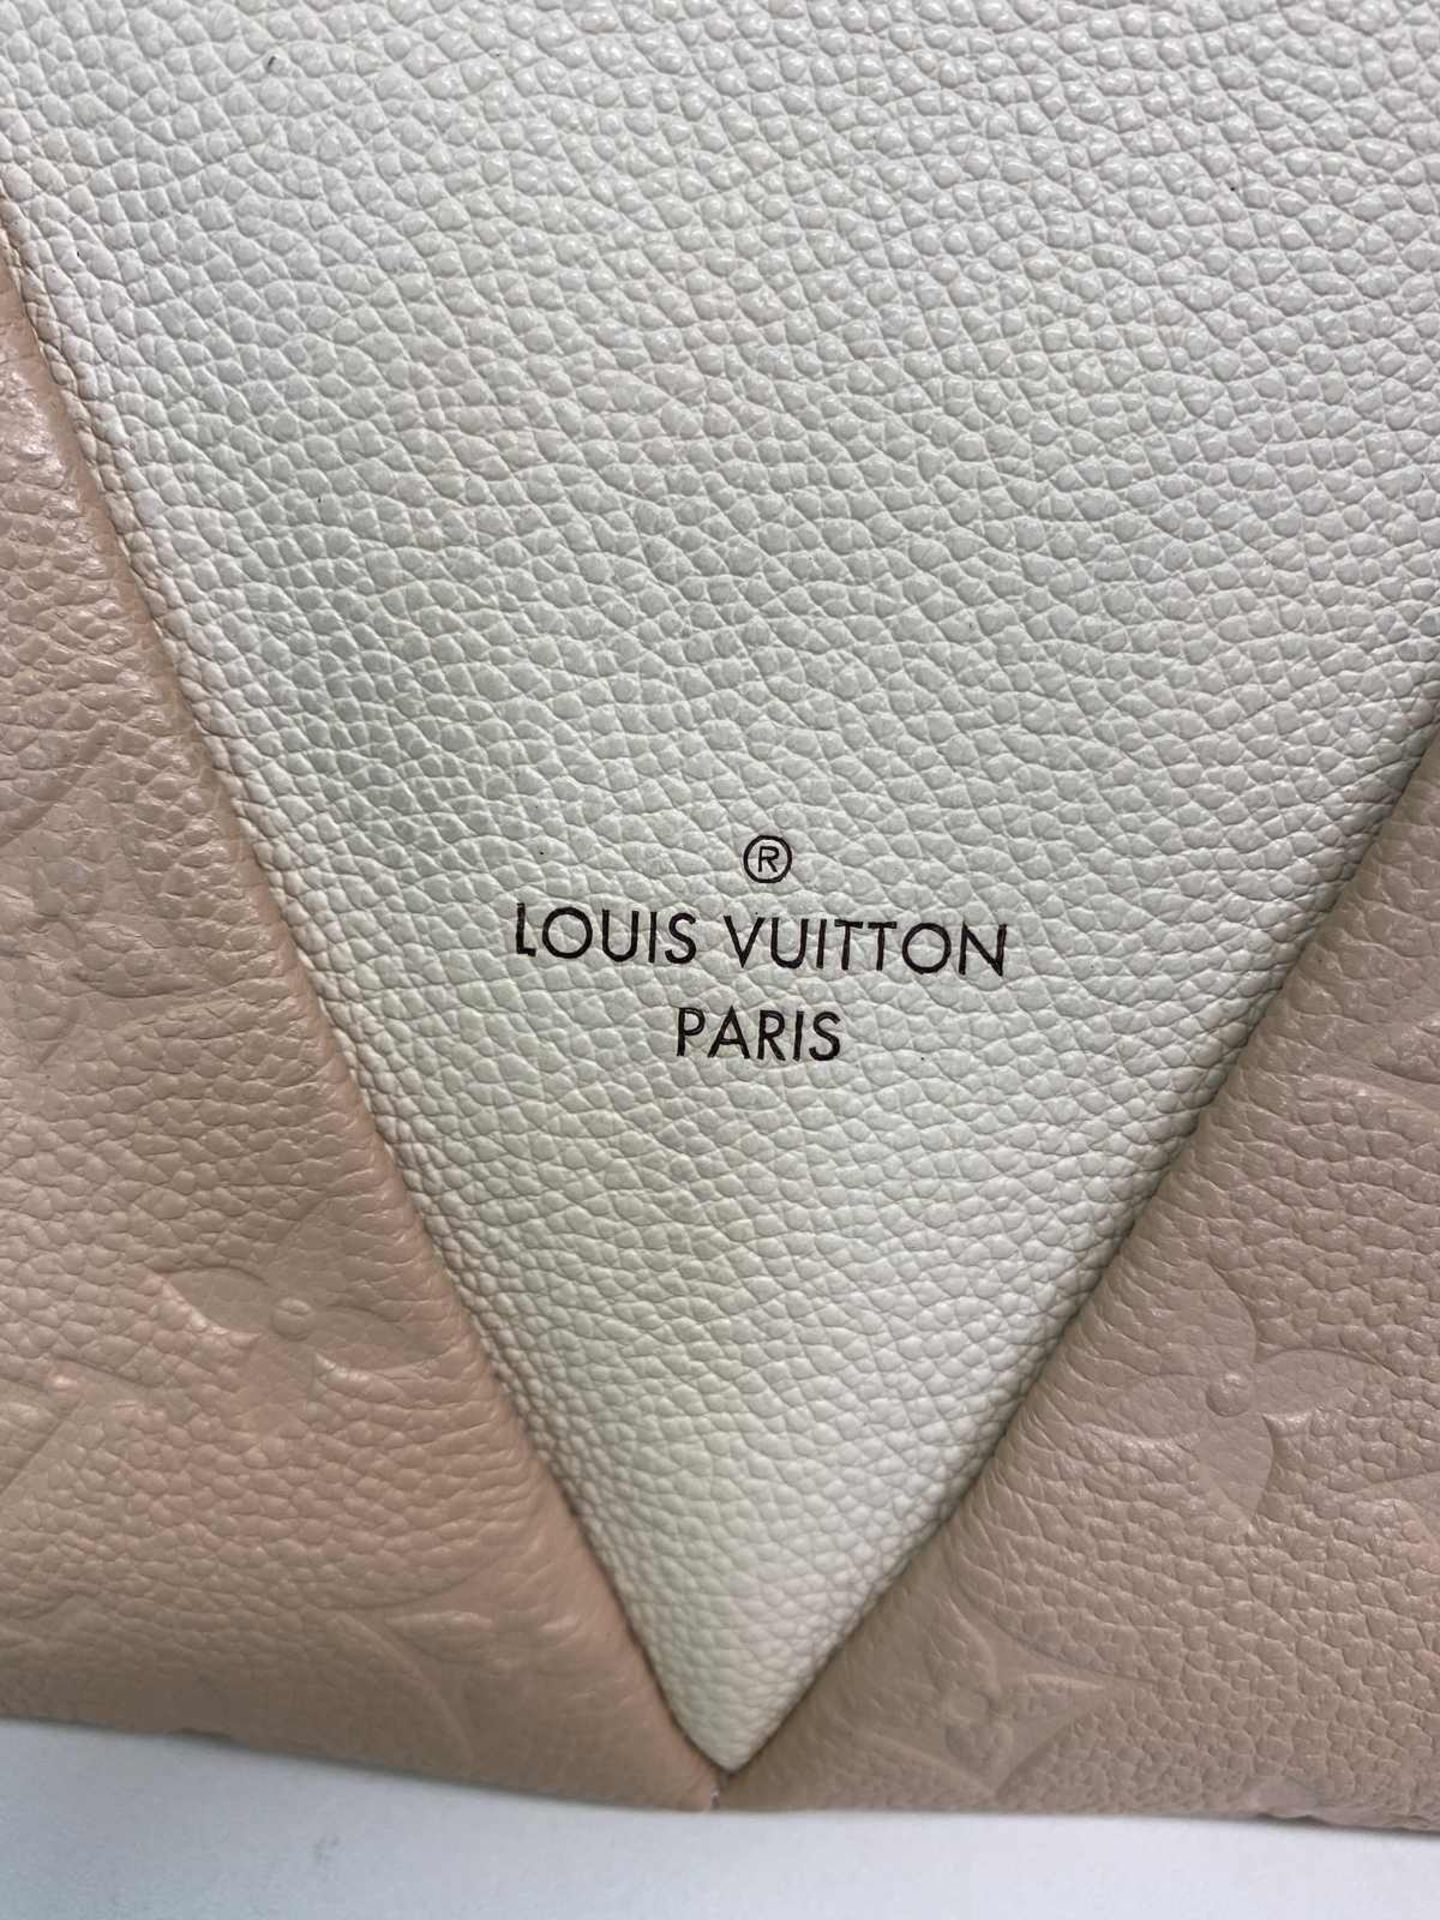 (*) LOUIS VUITTON Handtasche Louis Vuitton Tote Bag, Leder in creme beige mit Monogram Prägung. - Bild 7 aus 7